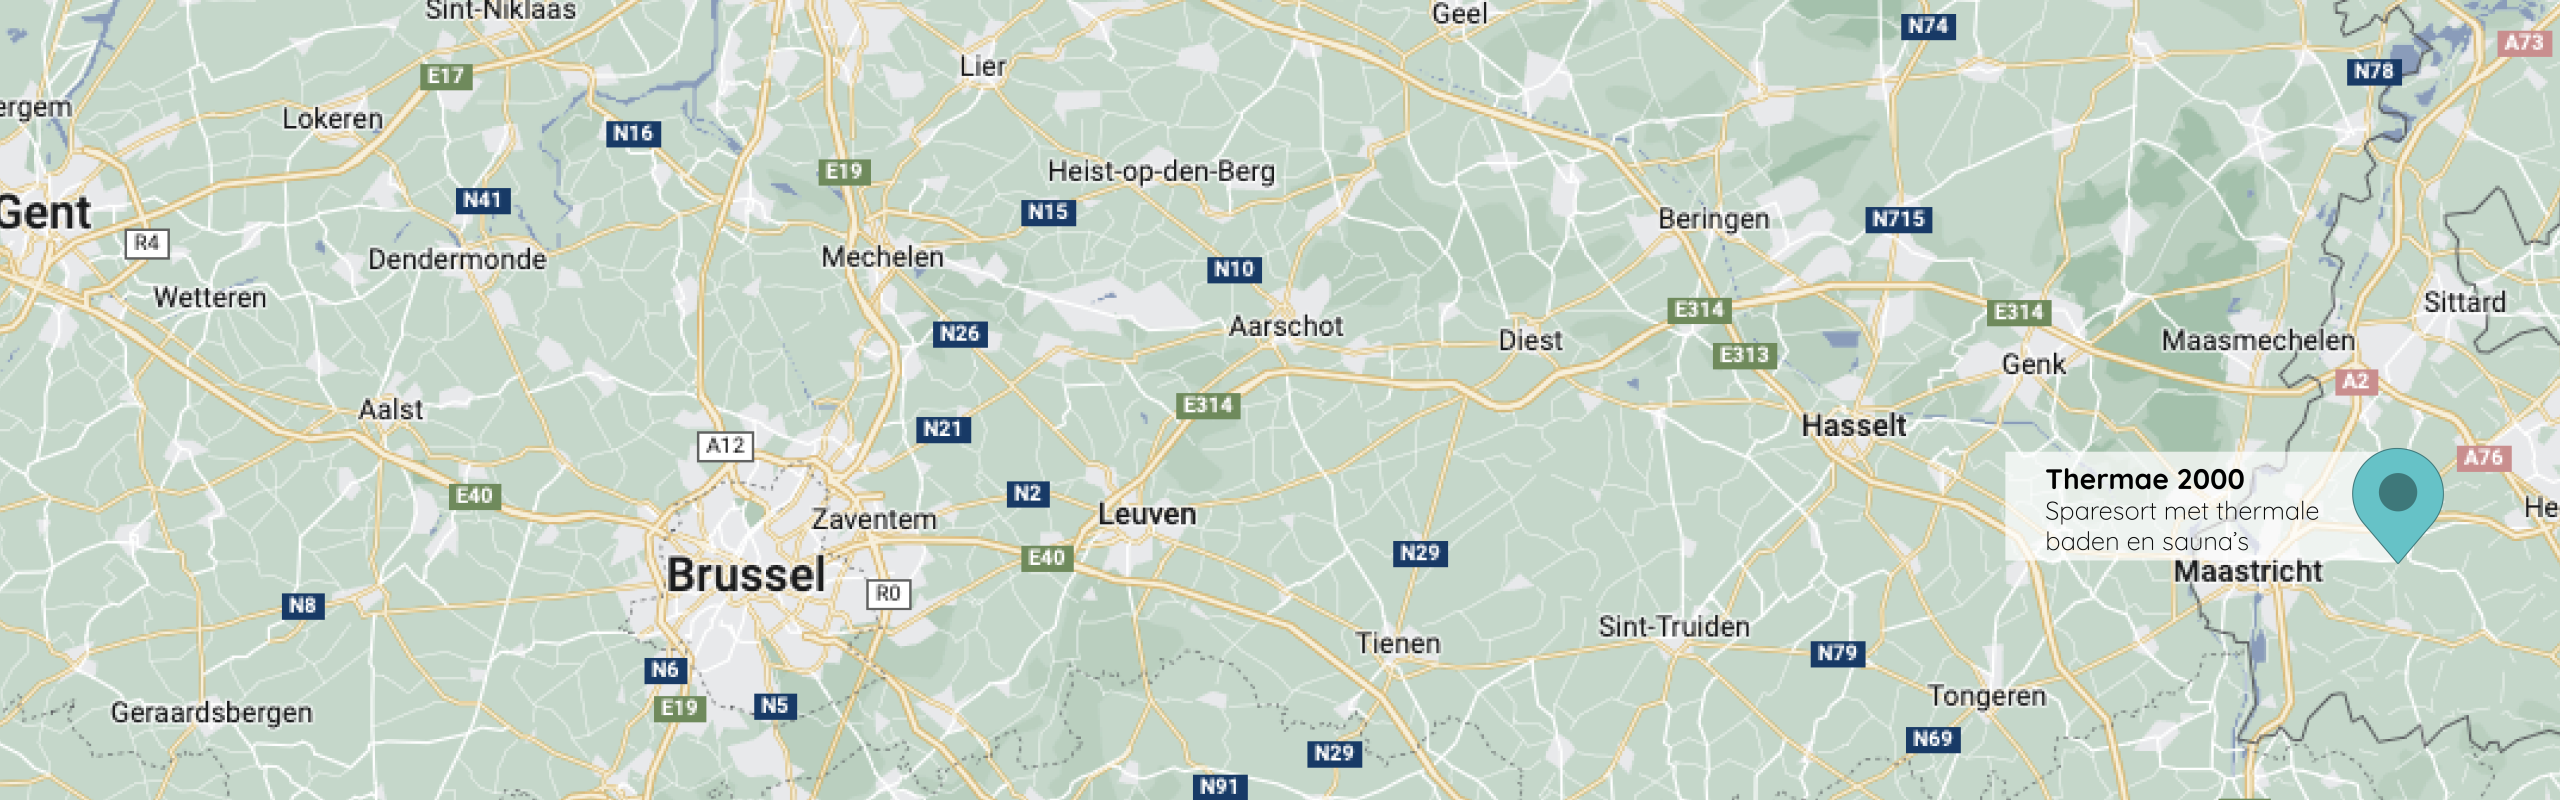 Thermae 2000 op de kaart voor de Belgische website.